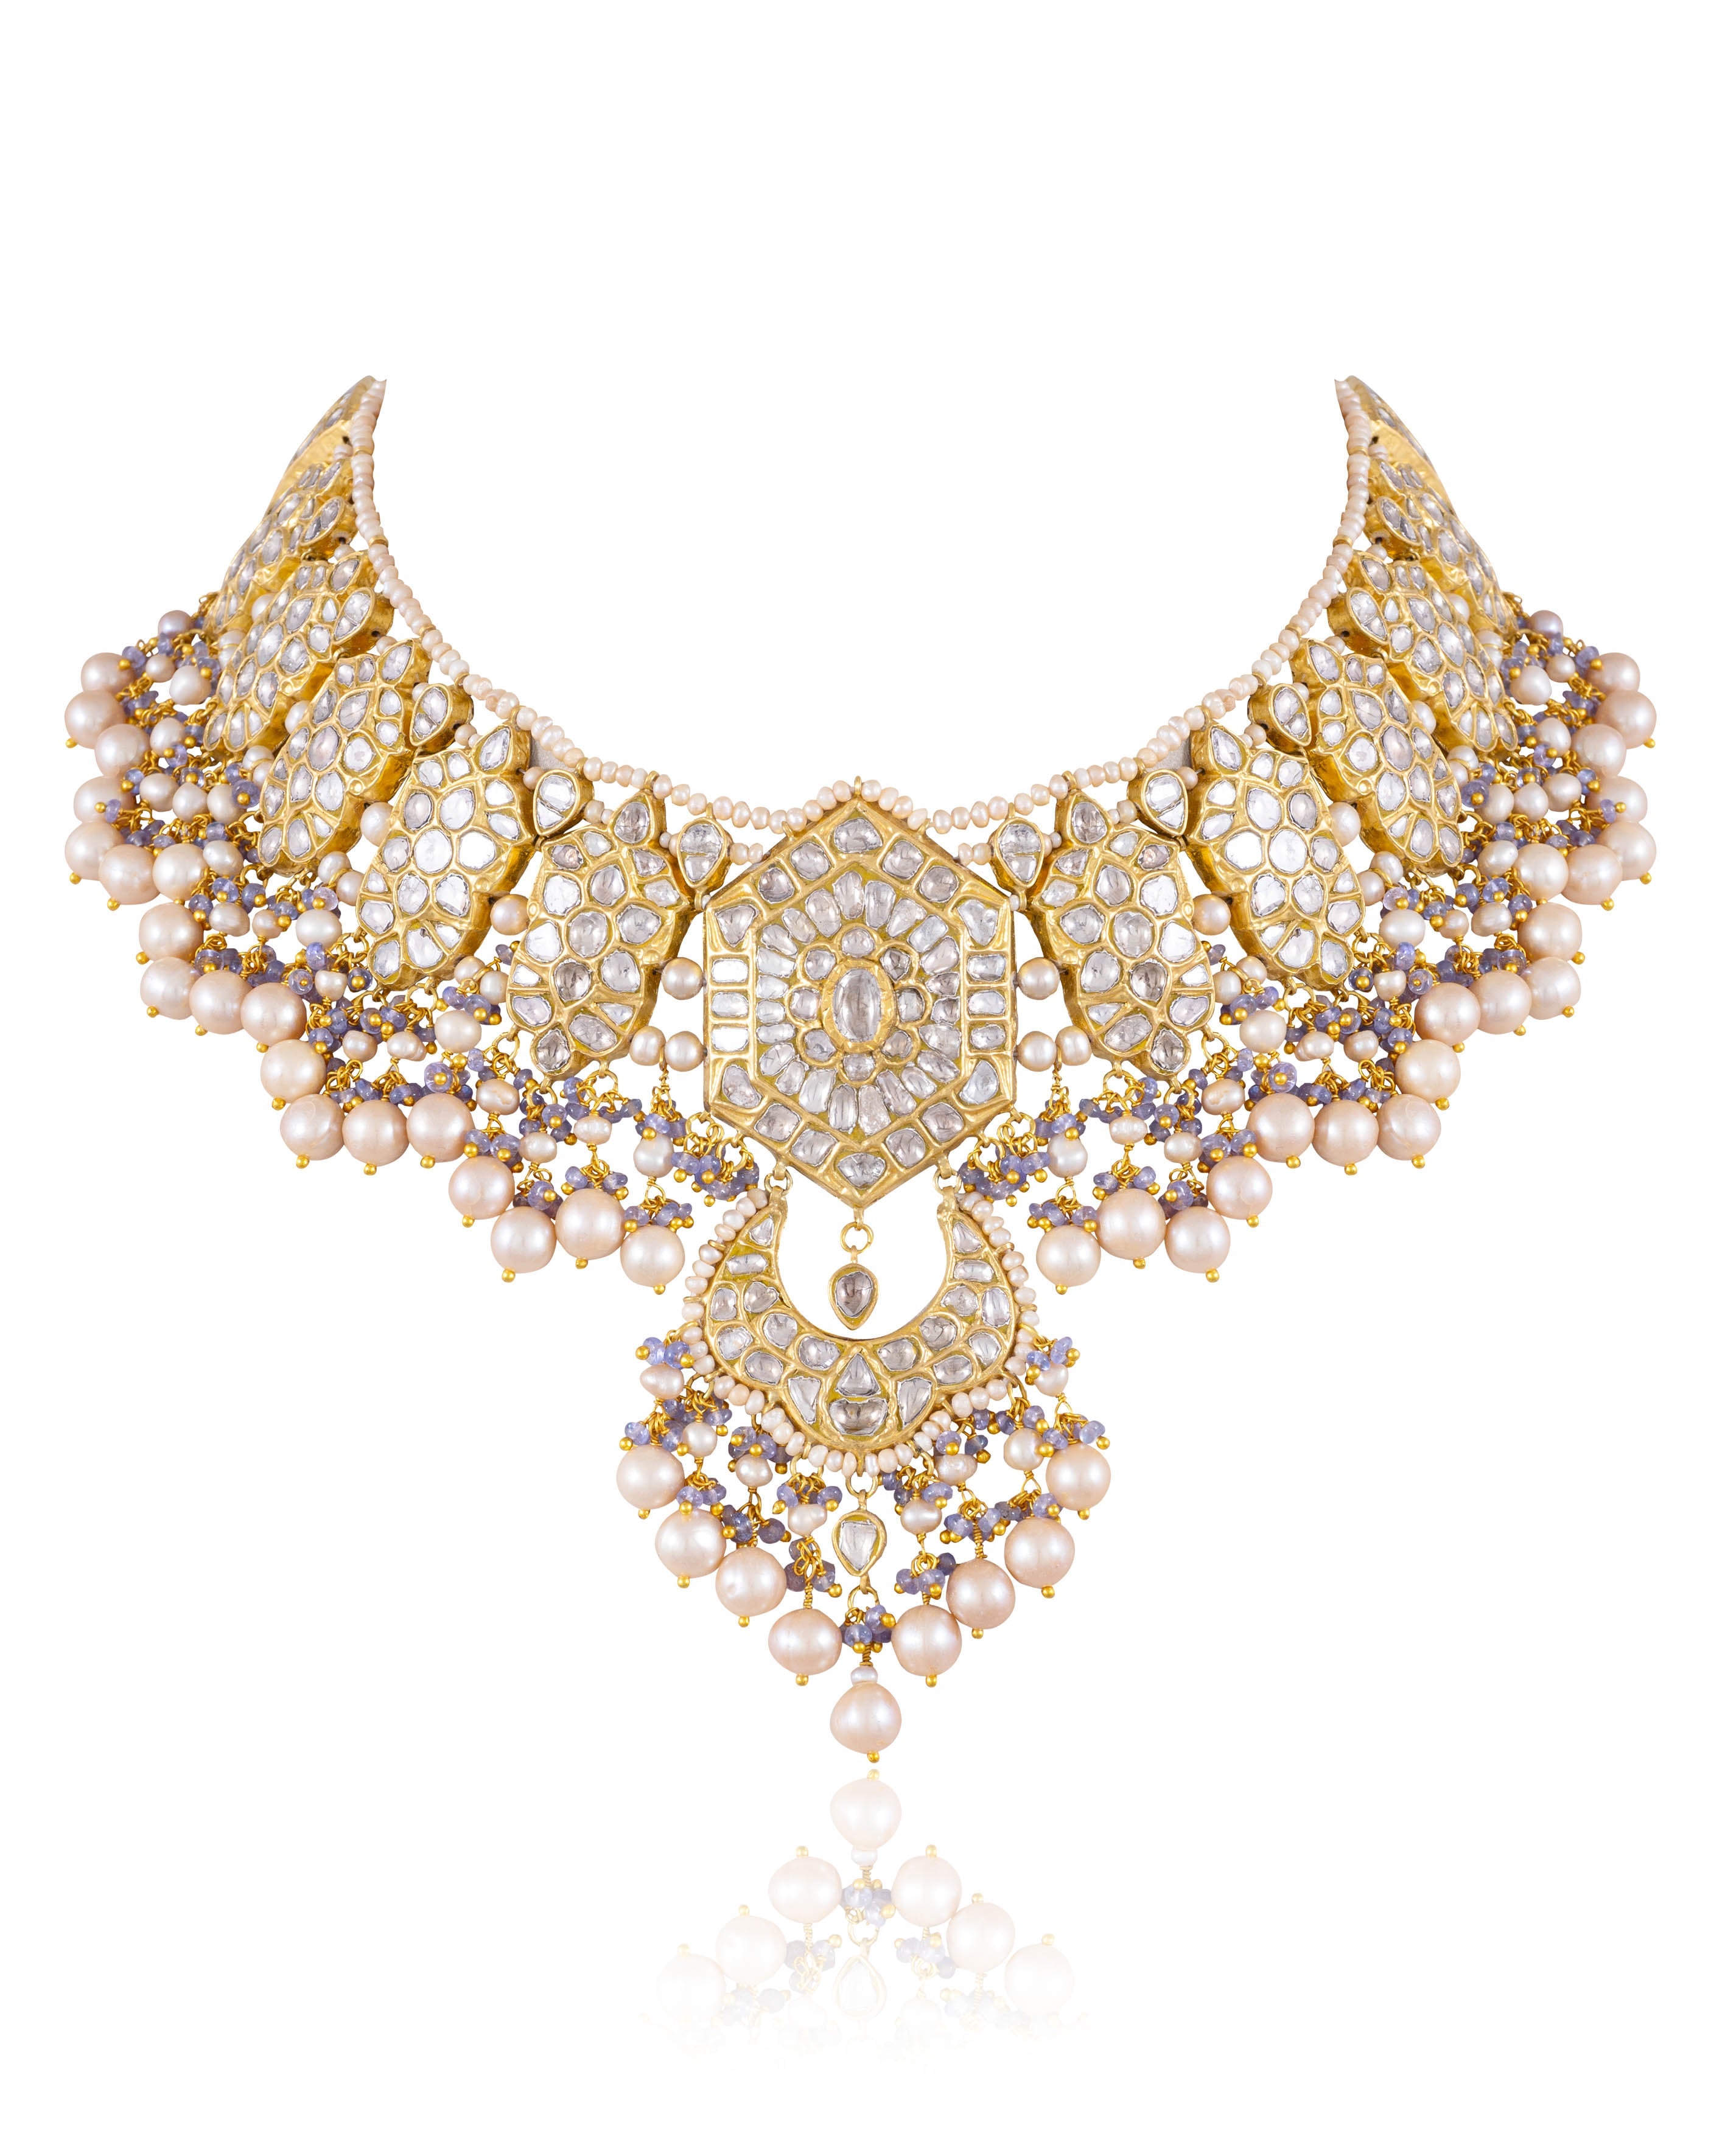 Alia Bhat Bridal Necklace from Rocky aur Rani ki Prem Kahani